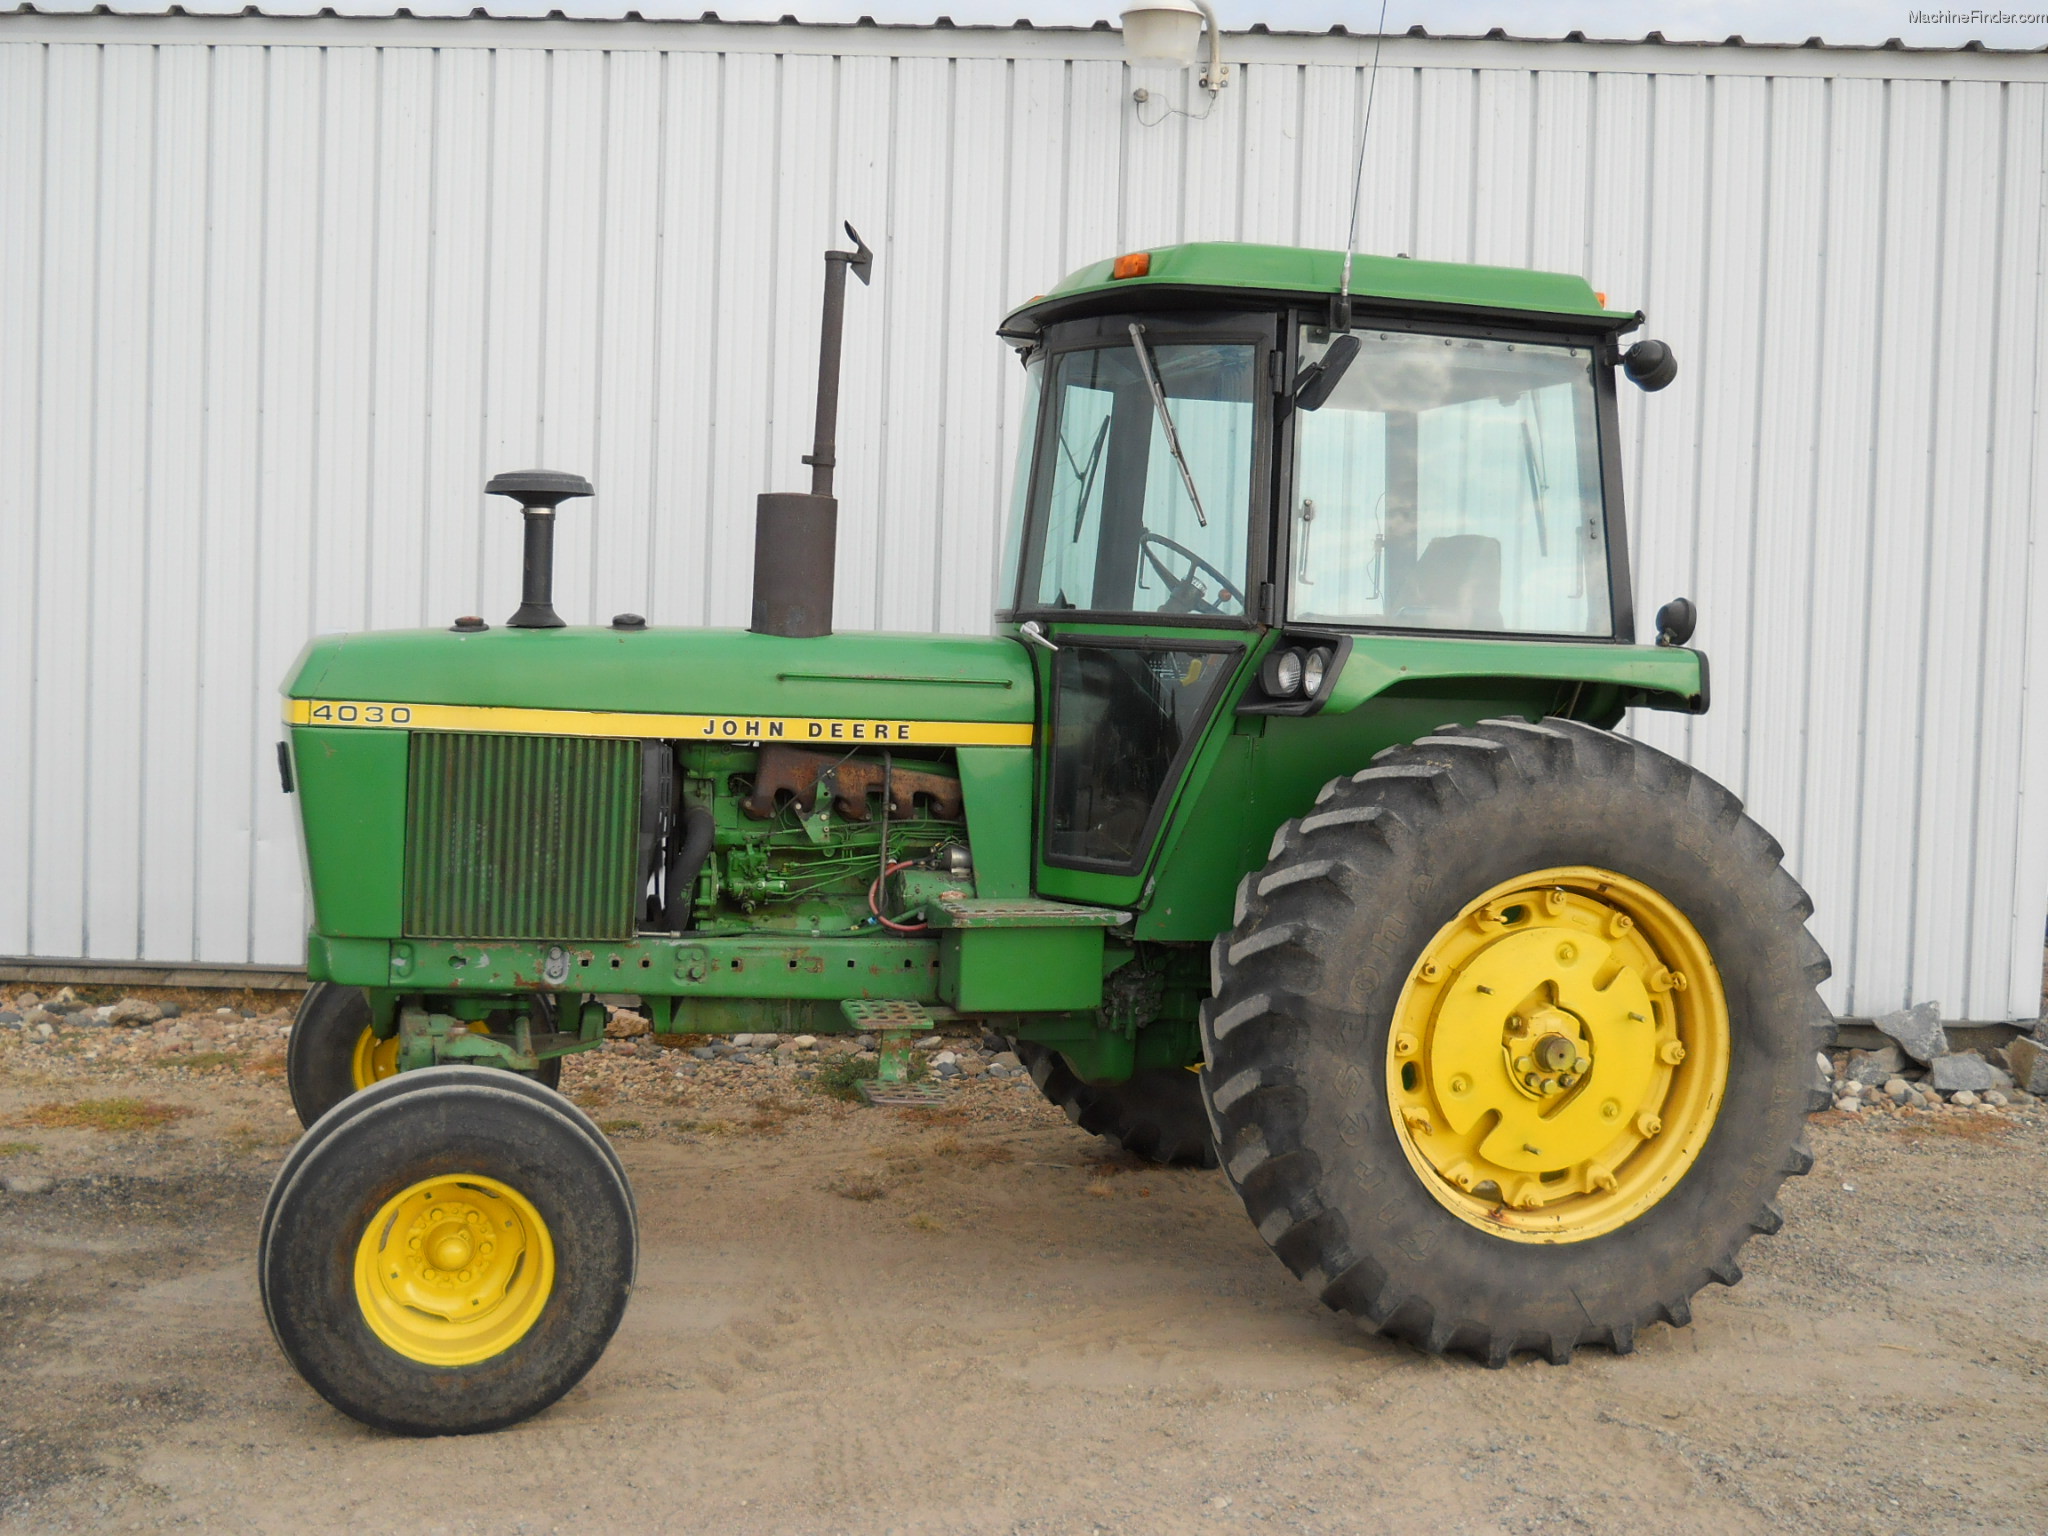 John Deere 4030 Tractors - Row Crop (+100hp) - John Deere ...